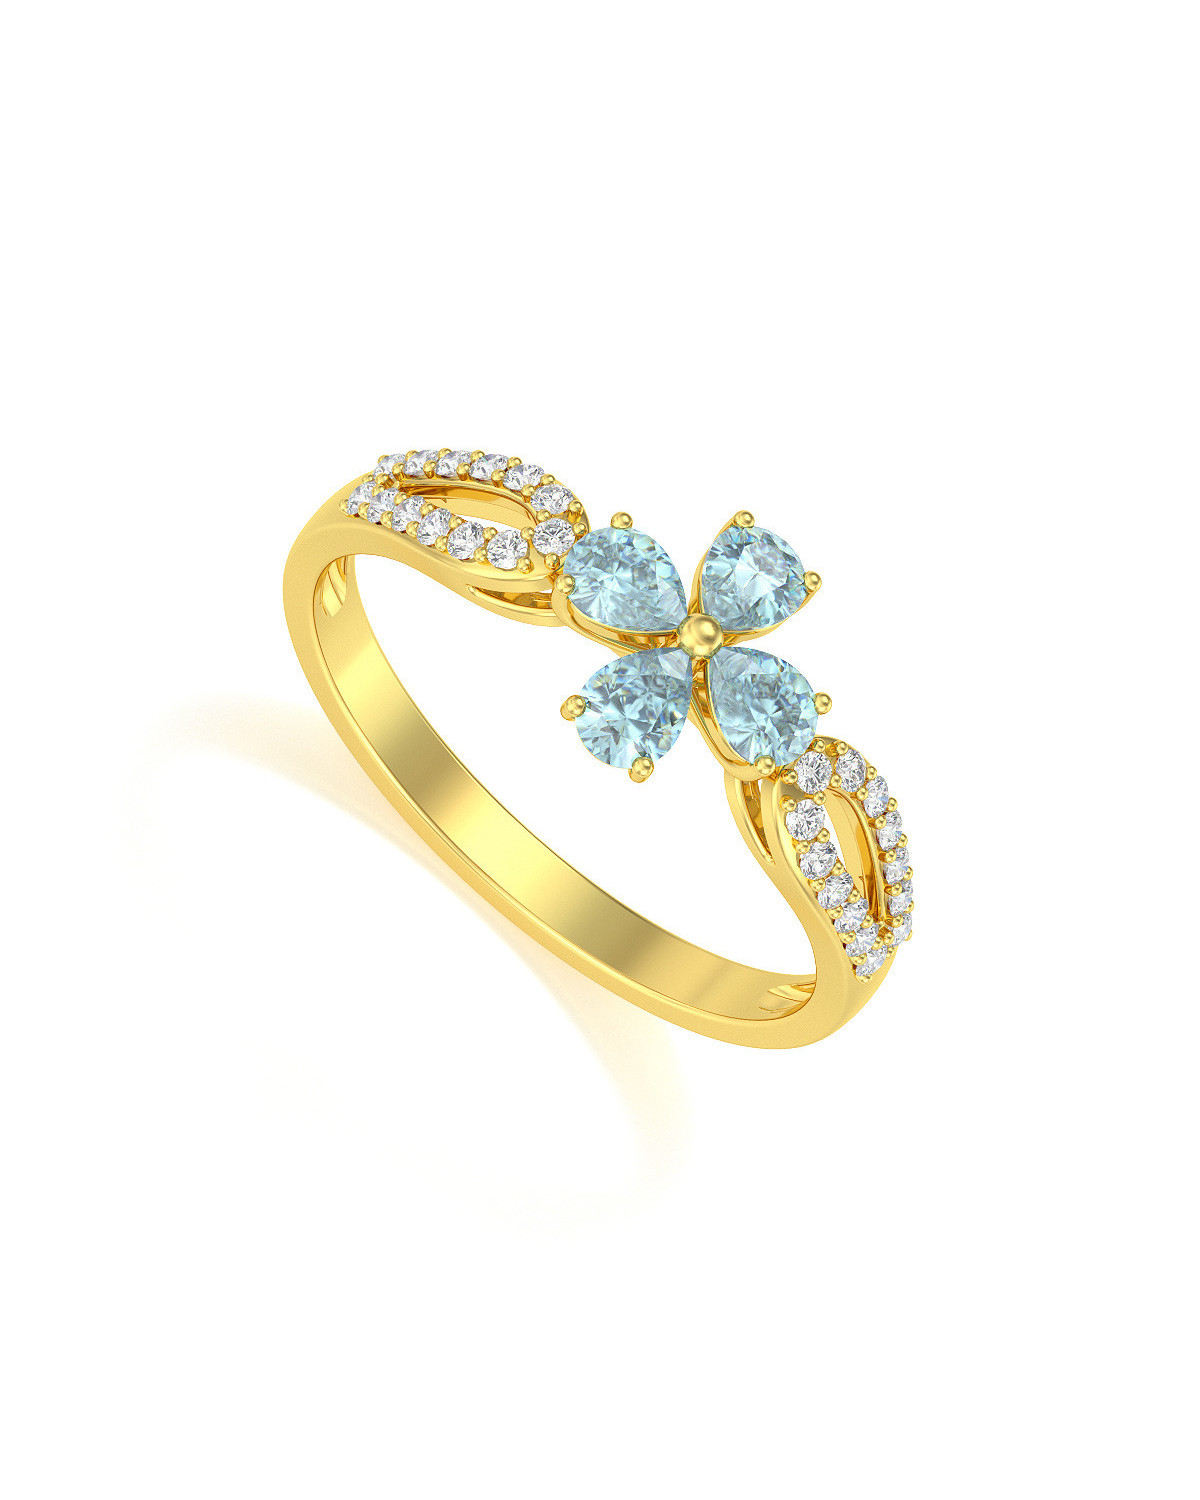 Bague Or Jaune Fleur Aigue-Marine et diamants 1.95grs